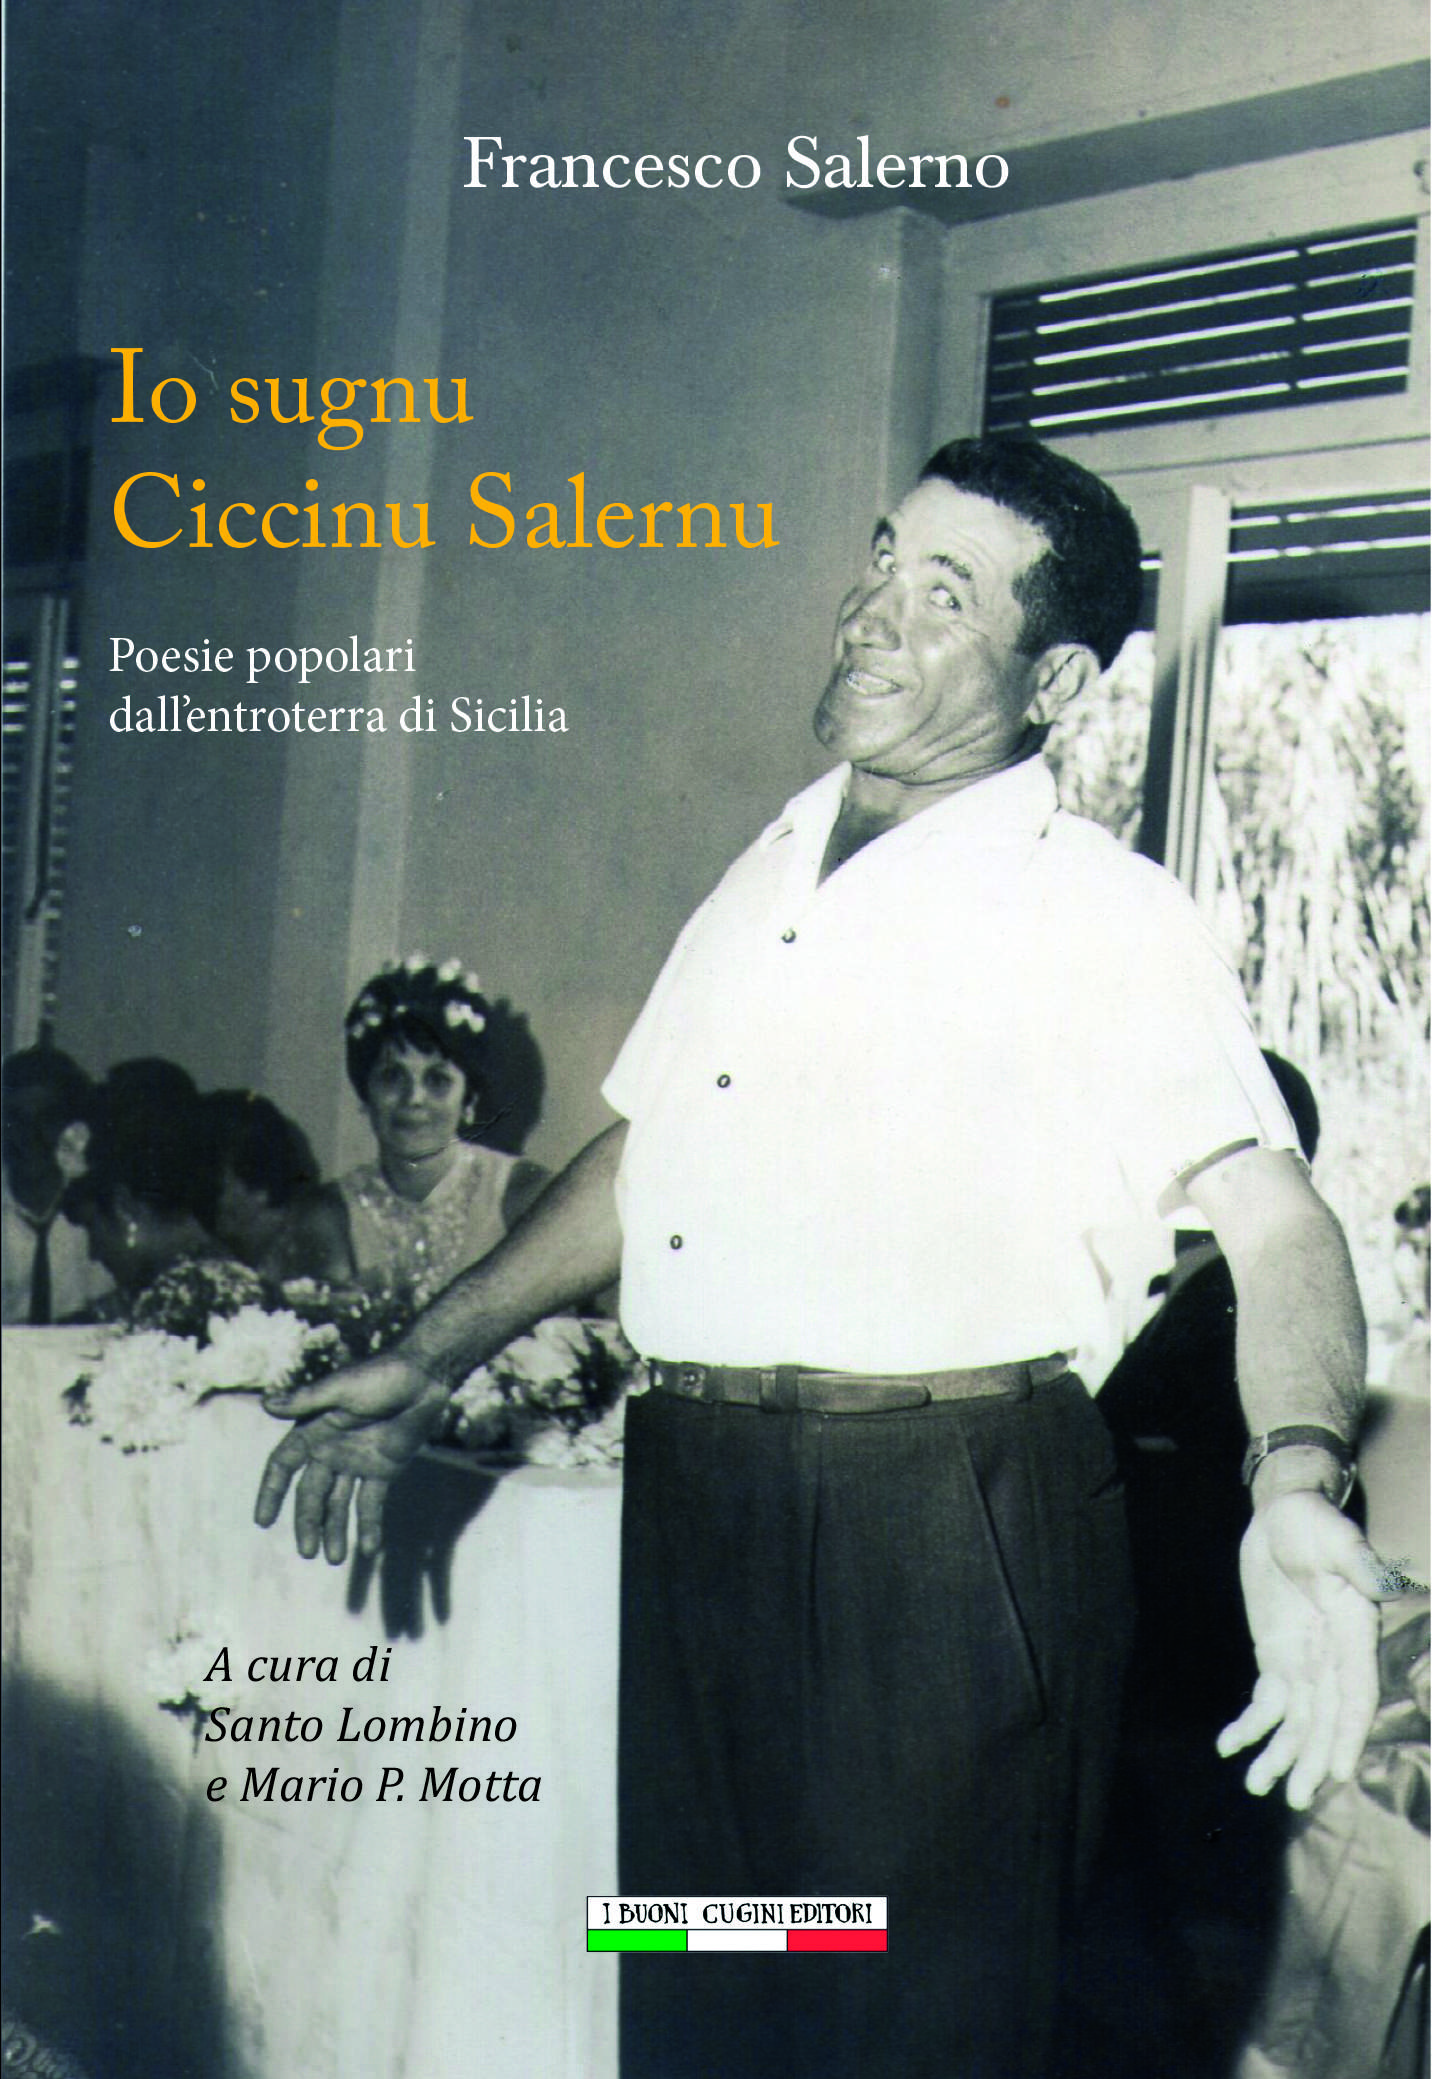 "Ciccinu Salernu"